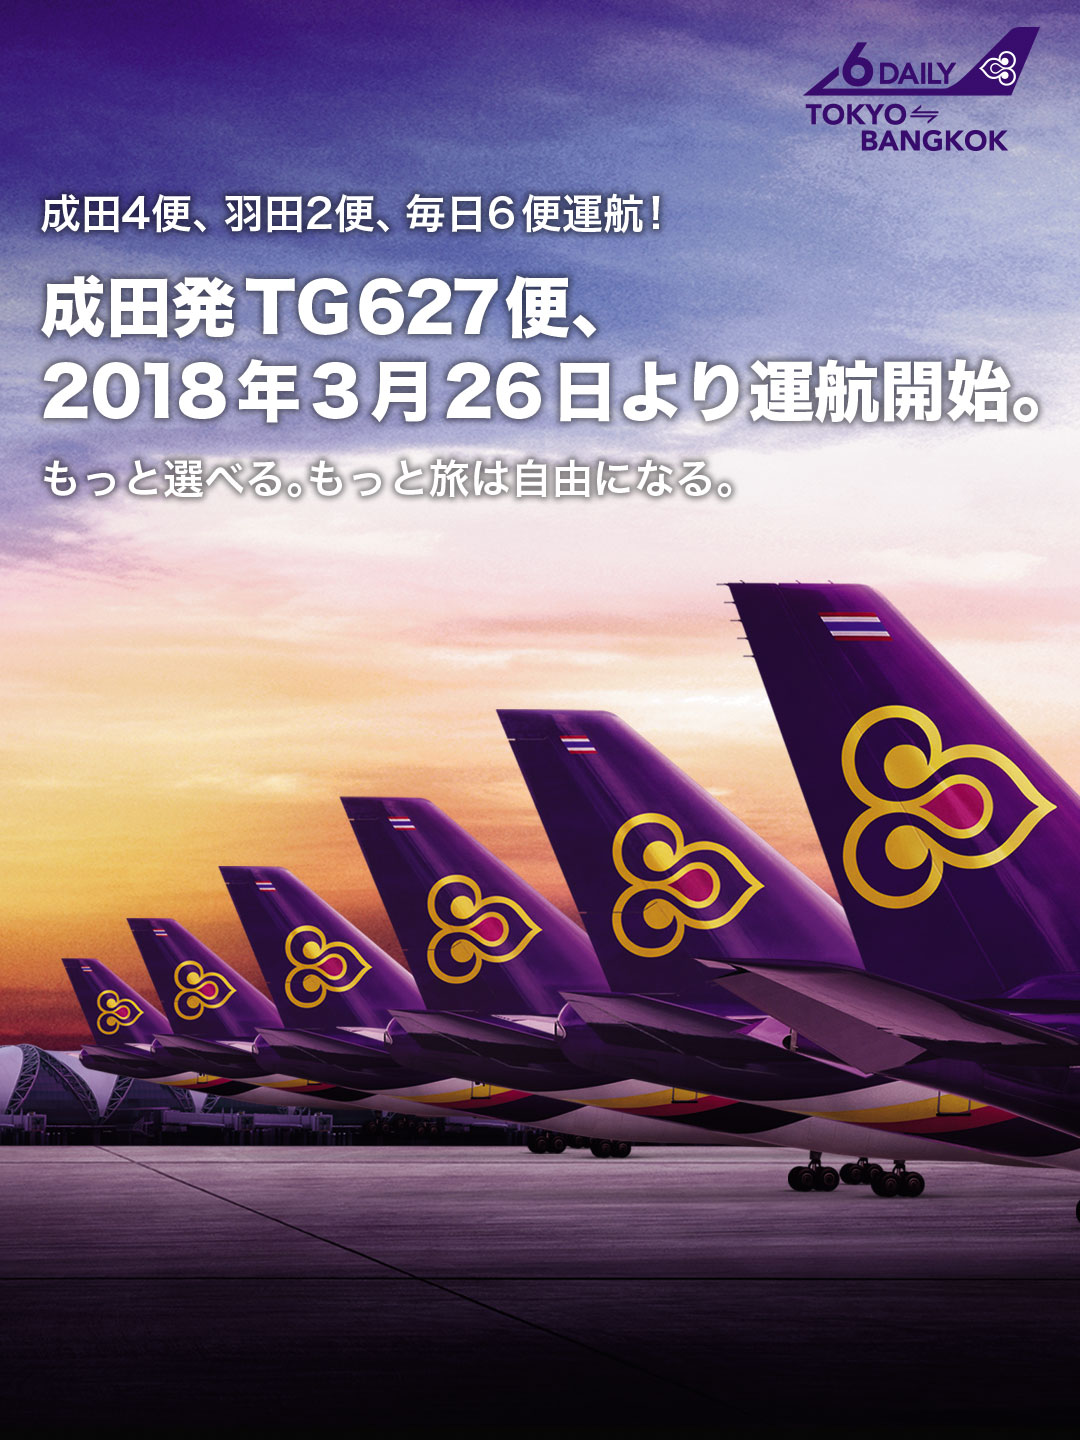 成田発TG627便、2018年3月26日より運航開始<